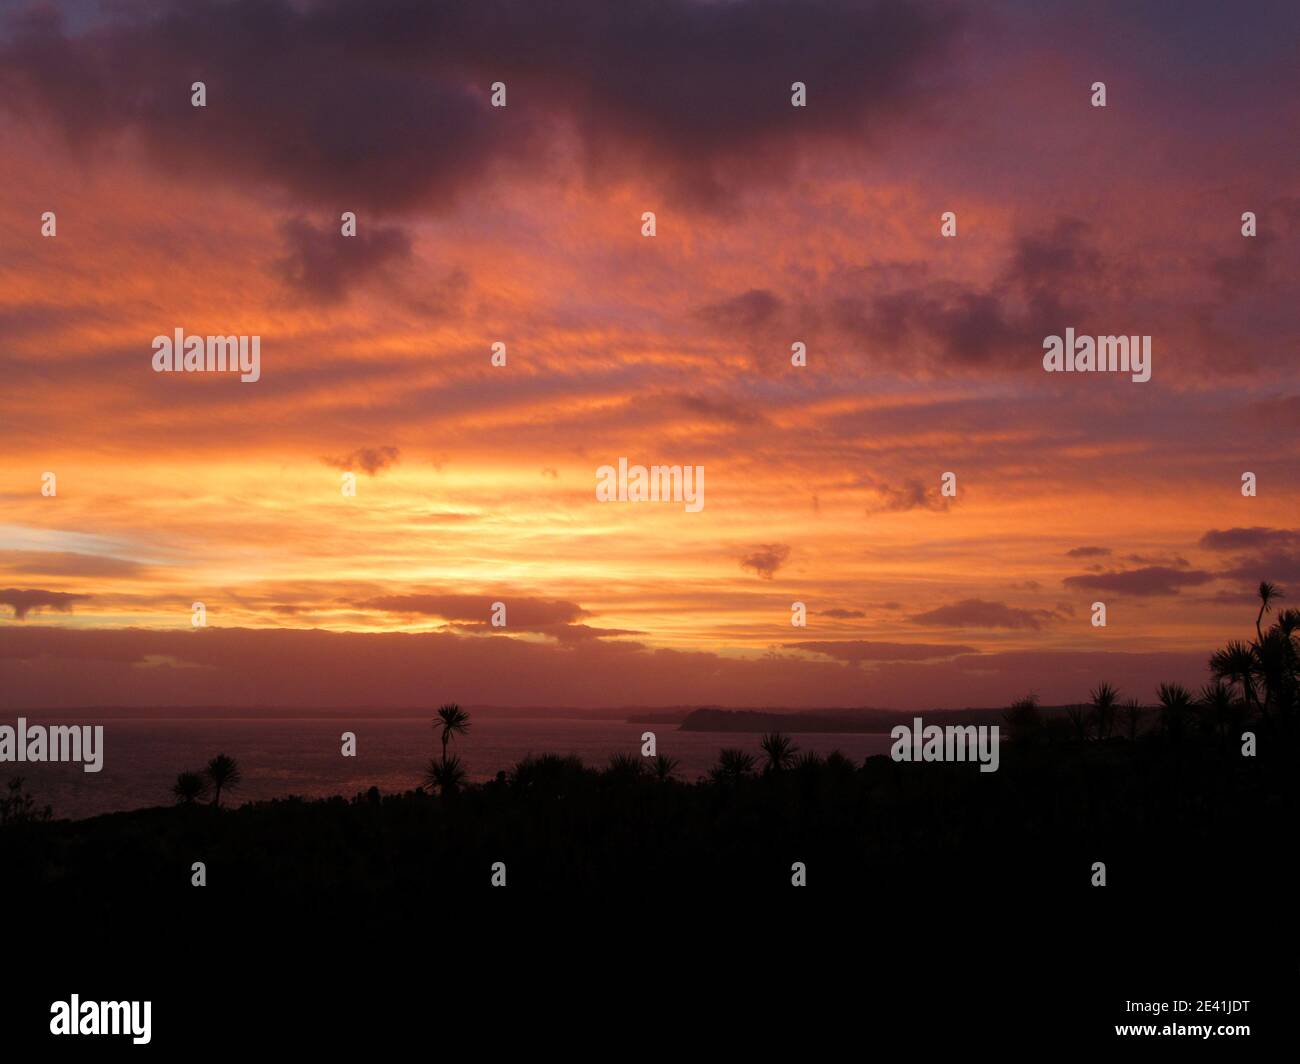 after sunset on Tiritiri Matangi Island in the Hauraki Gulf, New Zealand, Northern Island, Tiritiri Matangi Island Stock Photo